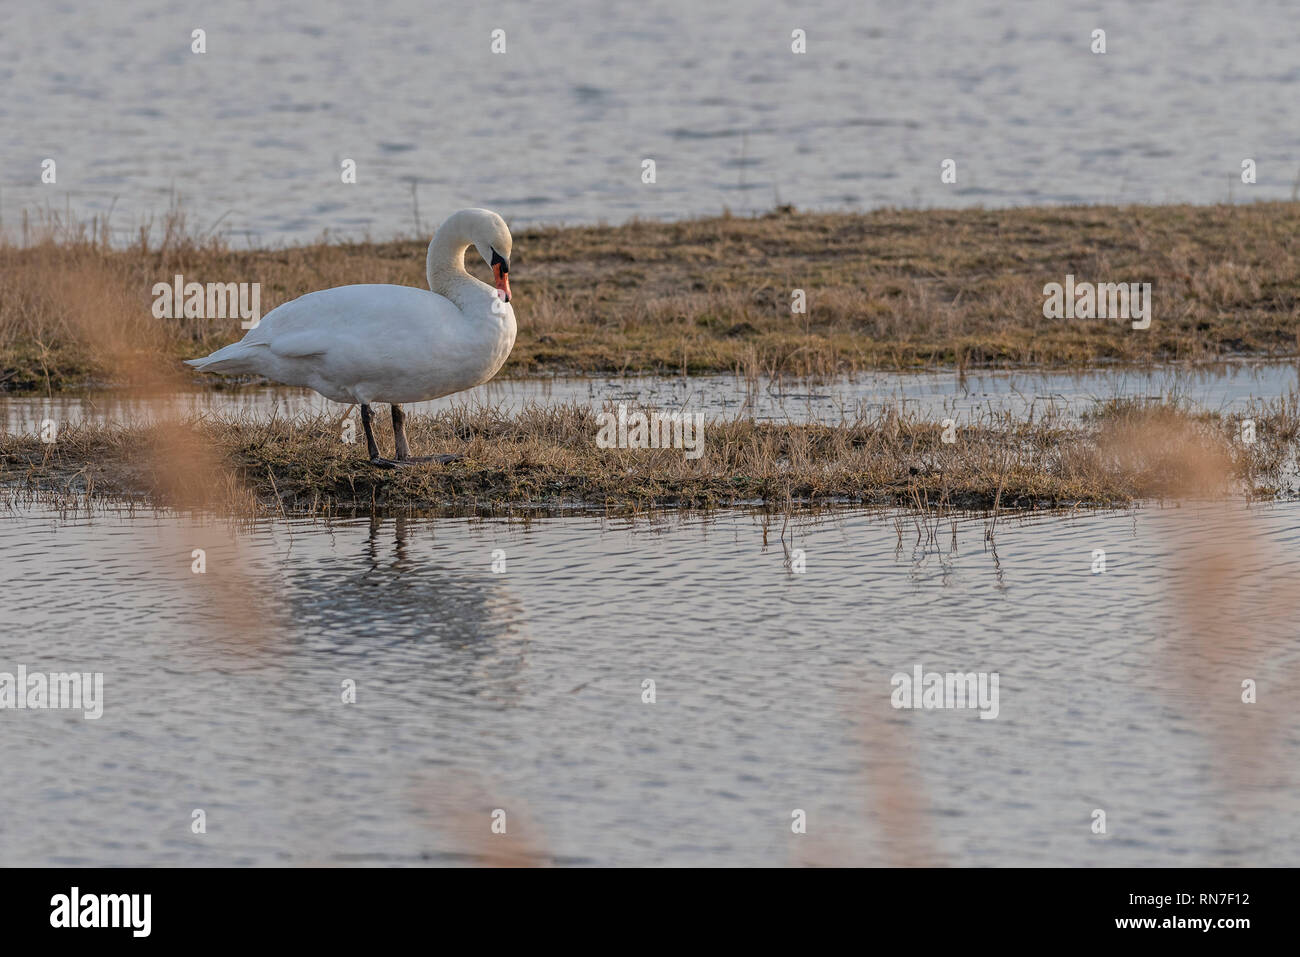 Swan (Cygnini) in Skocjanski zatok, Slowenien - Februar 2019 Stockfoto